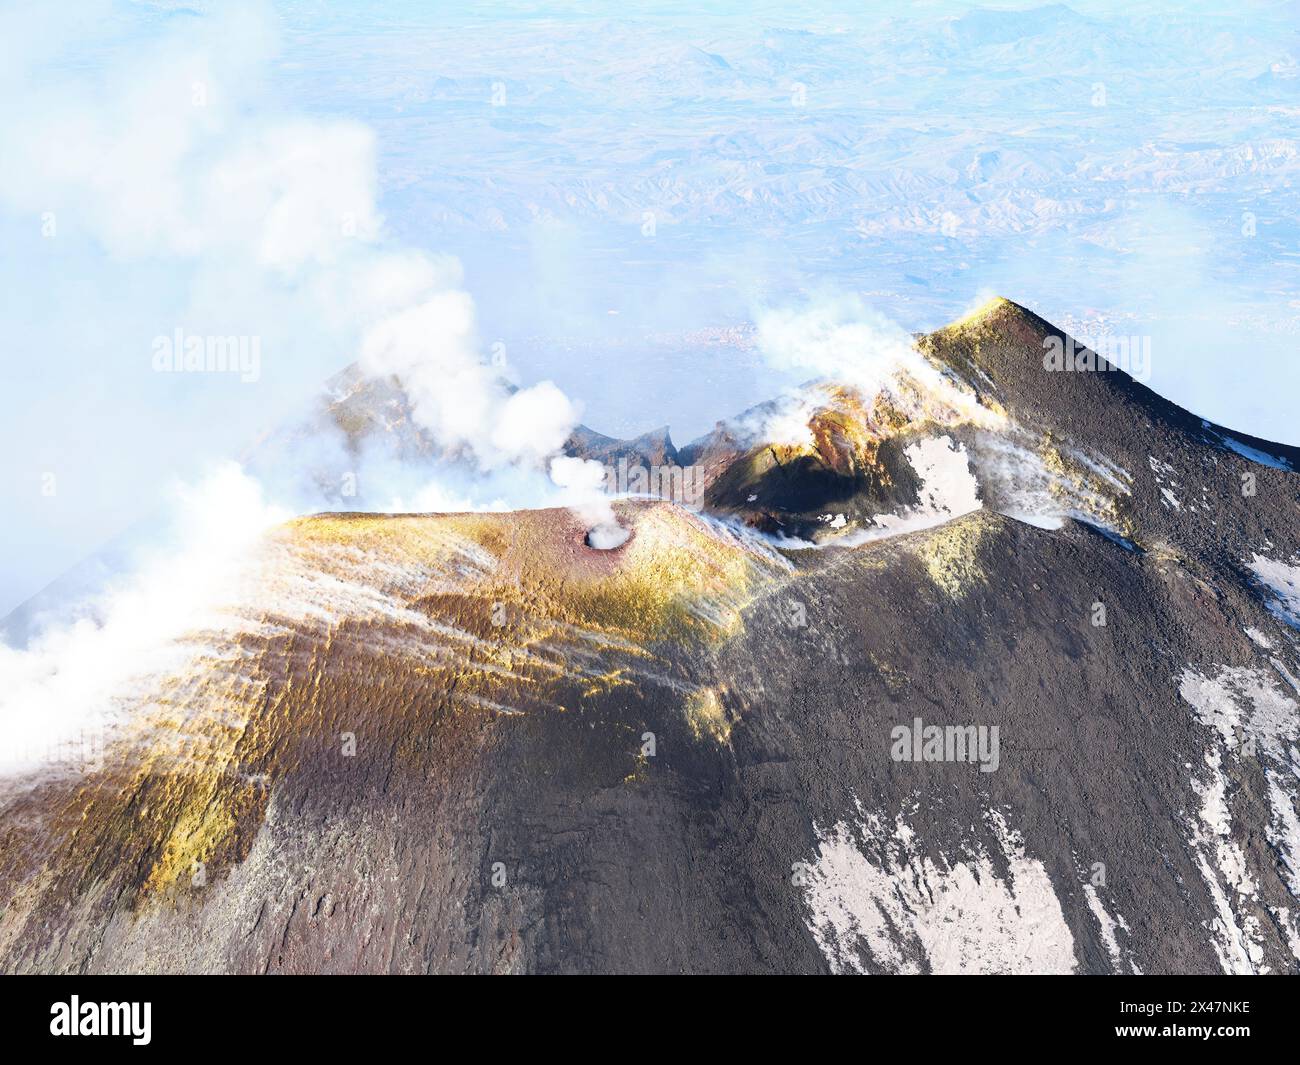 VUE AÉRIENNE. Le sommet de l'Etna avec les cratères Sud-est et Nouveau Sud-est. Ville métropolitaine de Catane, Sicile, Italie. Banque D'Images